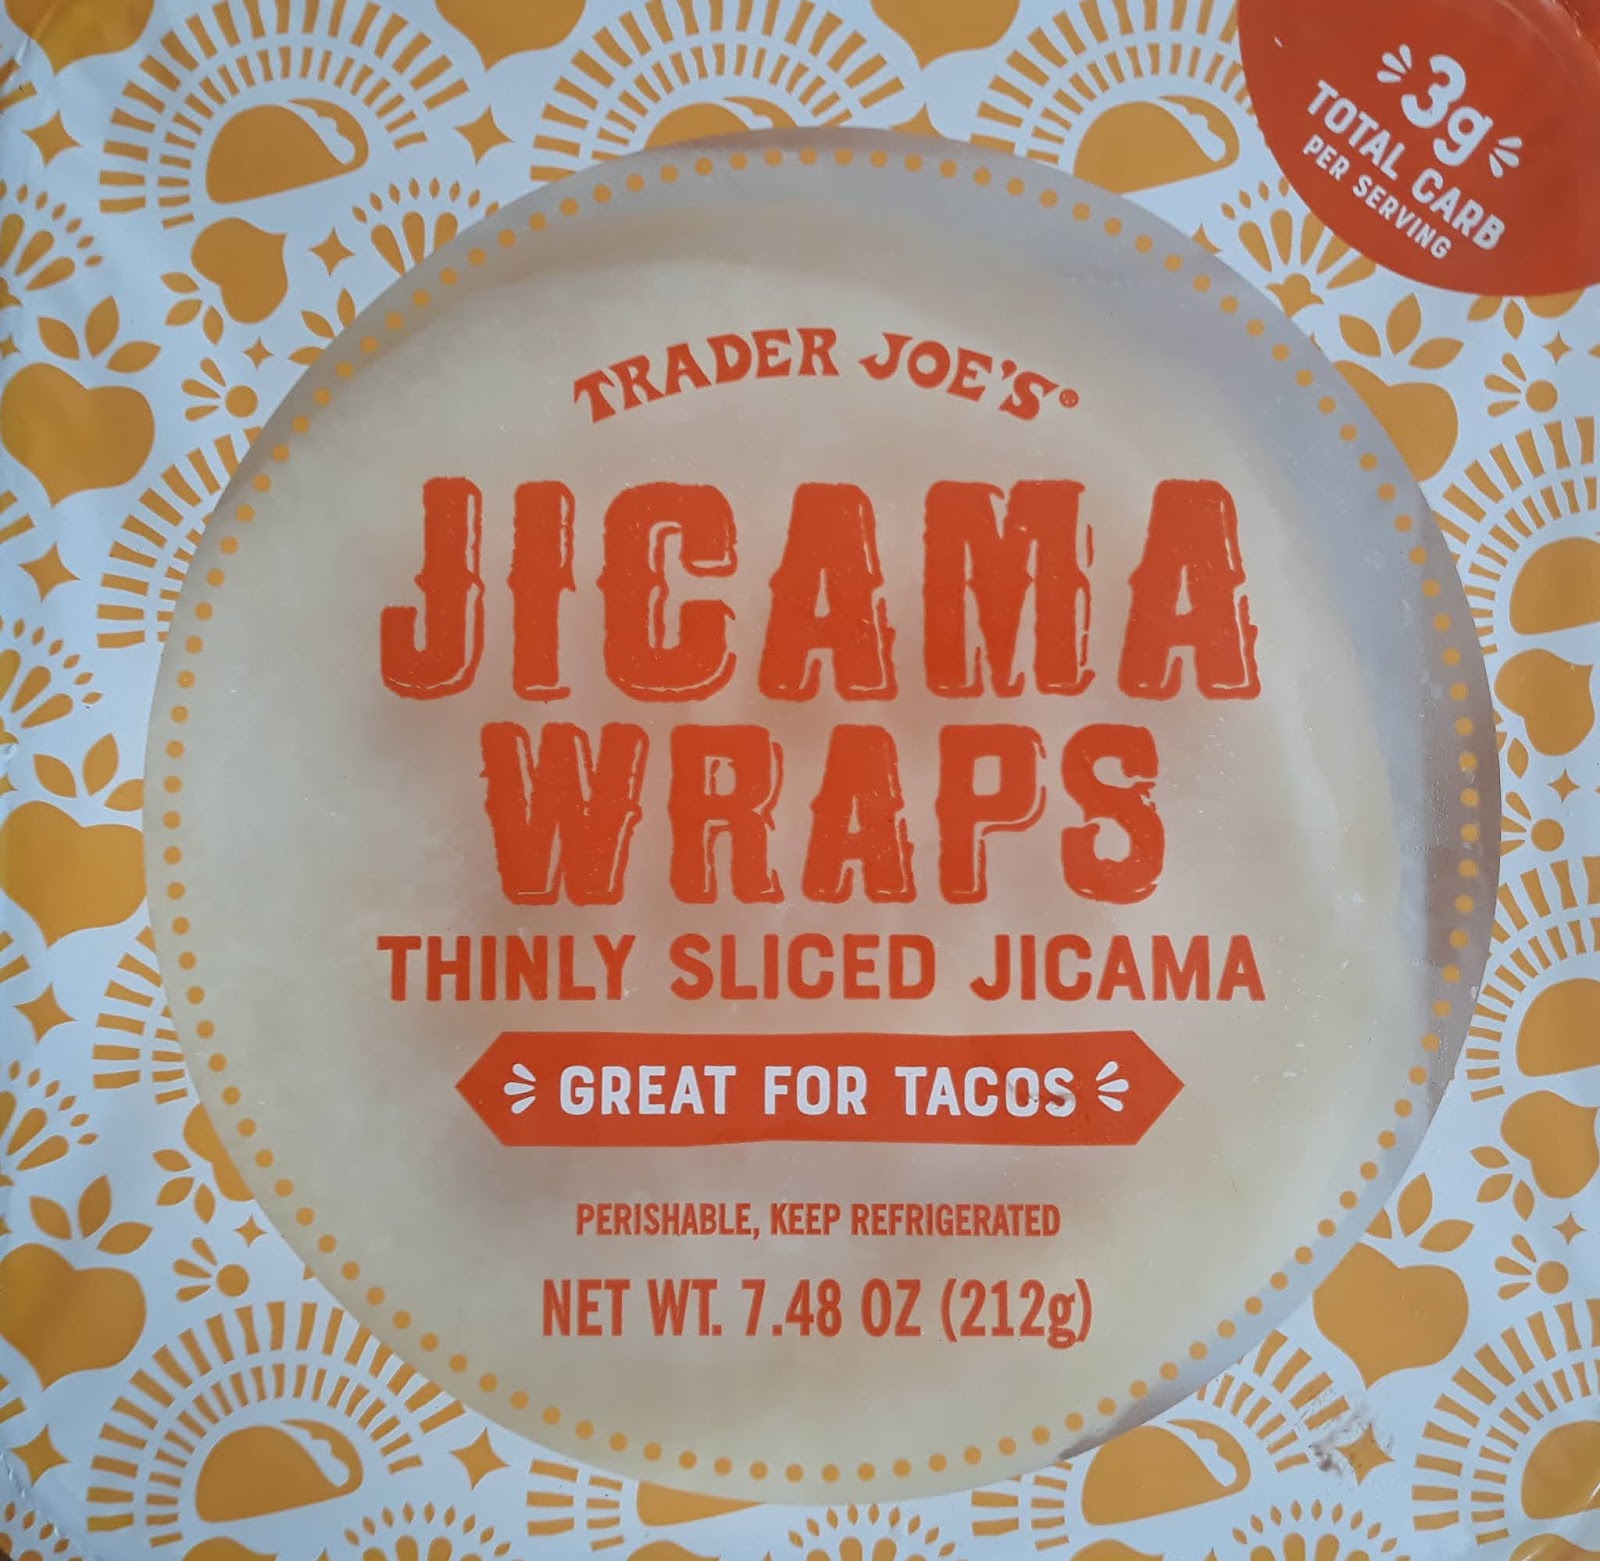 What S Good At Trader Joe S Trader Joe S Jicama Wraps